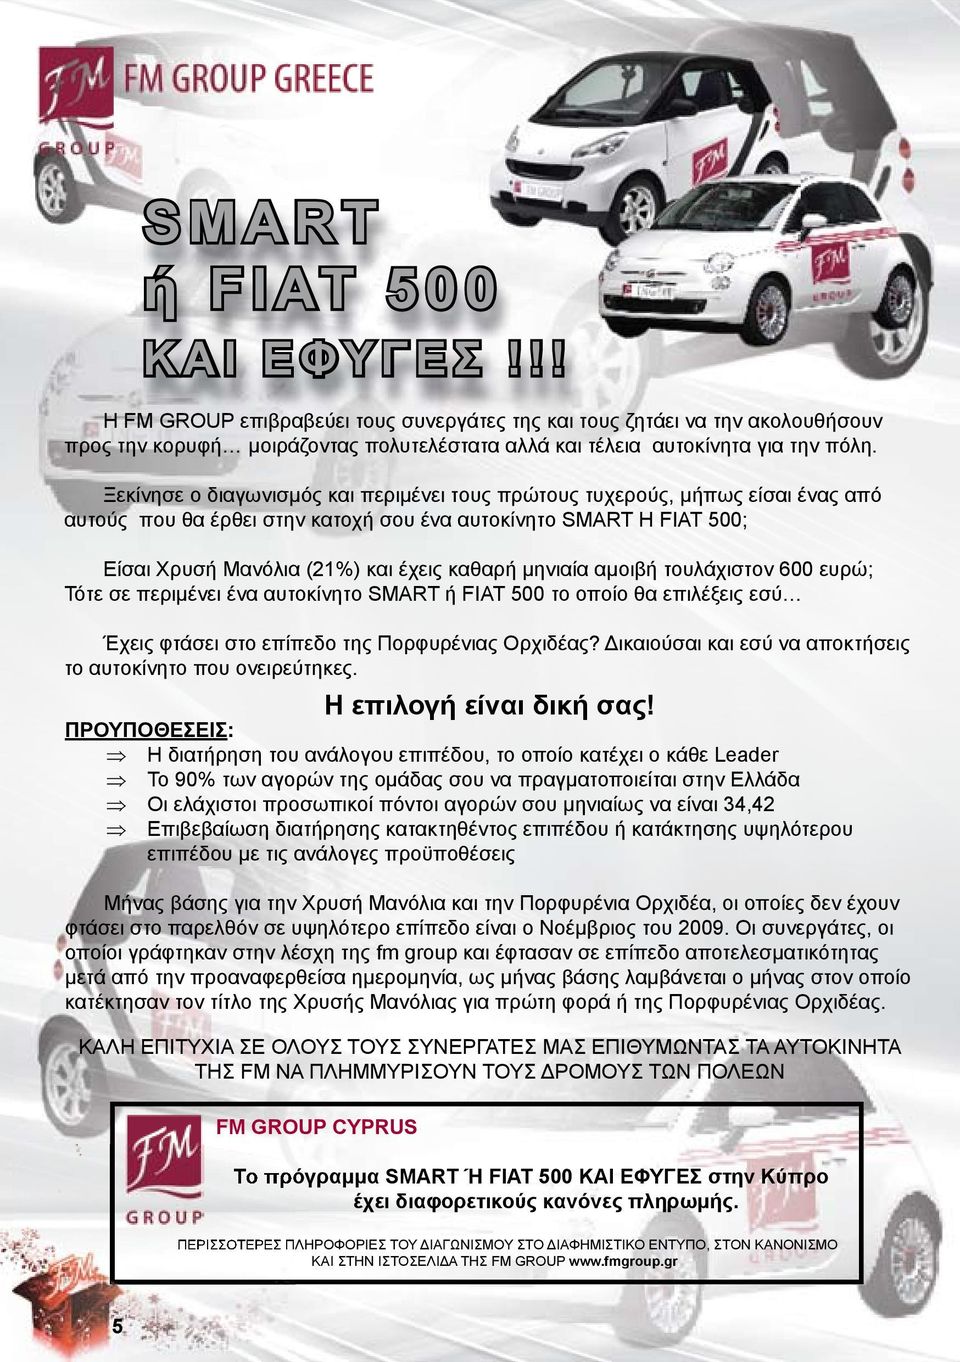 μηνιαία αμοιβή τουλάχιστον 600 ευρώ; Τότε σε περιμένει ένα αυτοκίνητο SMART ή FIAT 500 το οποίο θα επιλέξεις εσύ Έχεις φτάσει στο επίπεδο της Πορφυρένιας Ορχιδέας?